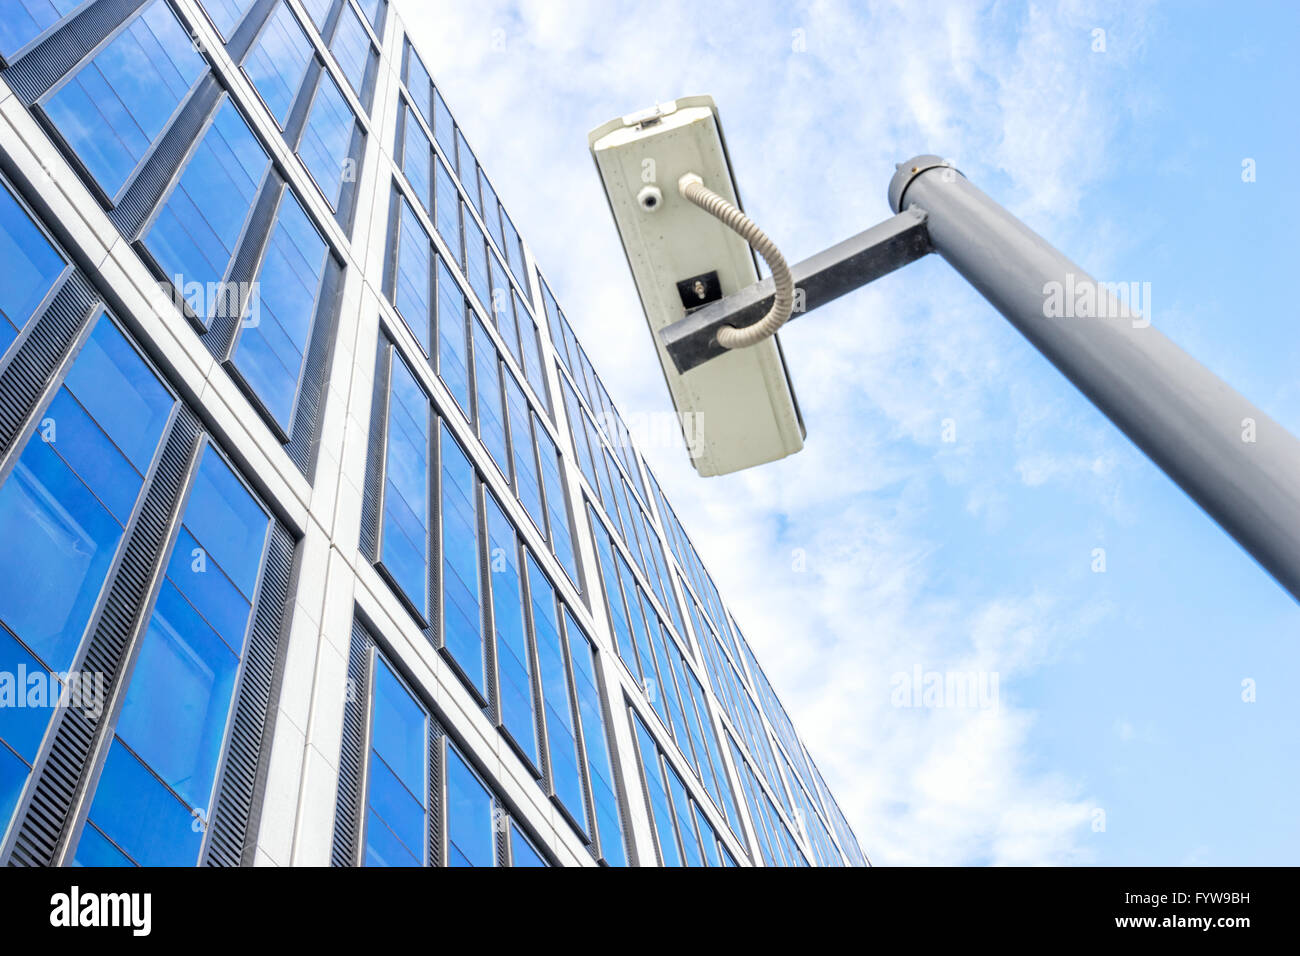 Spion auf Pole in der Nähe von modernen Gebäude im blauen Himmel Stockfoto